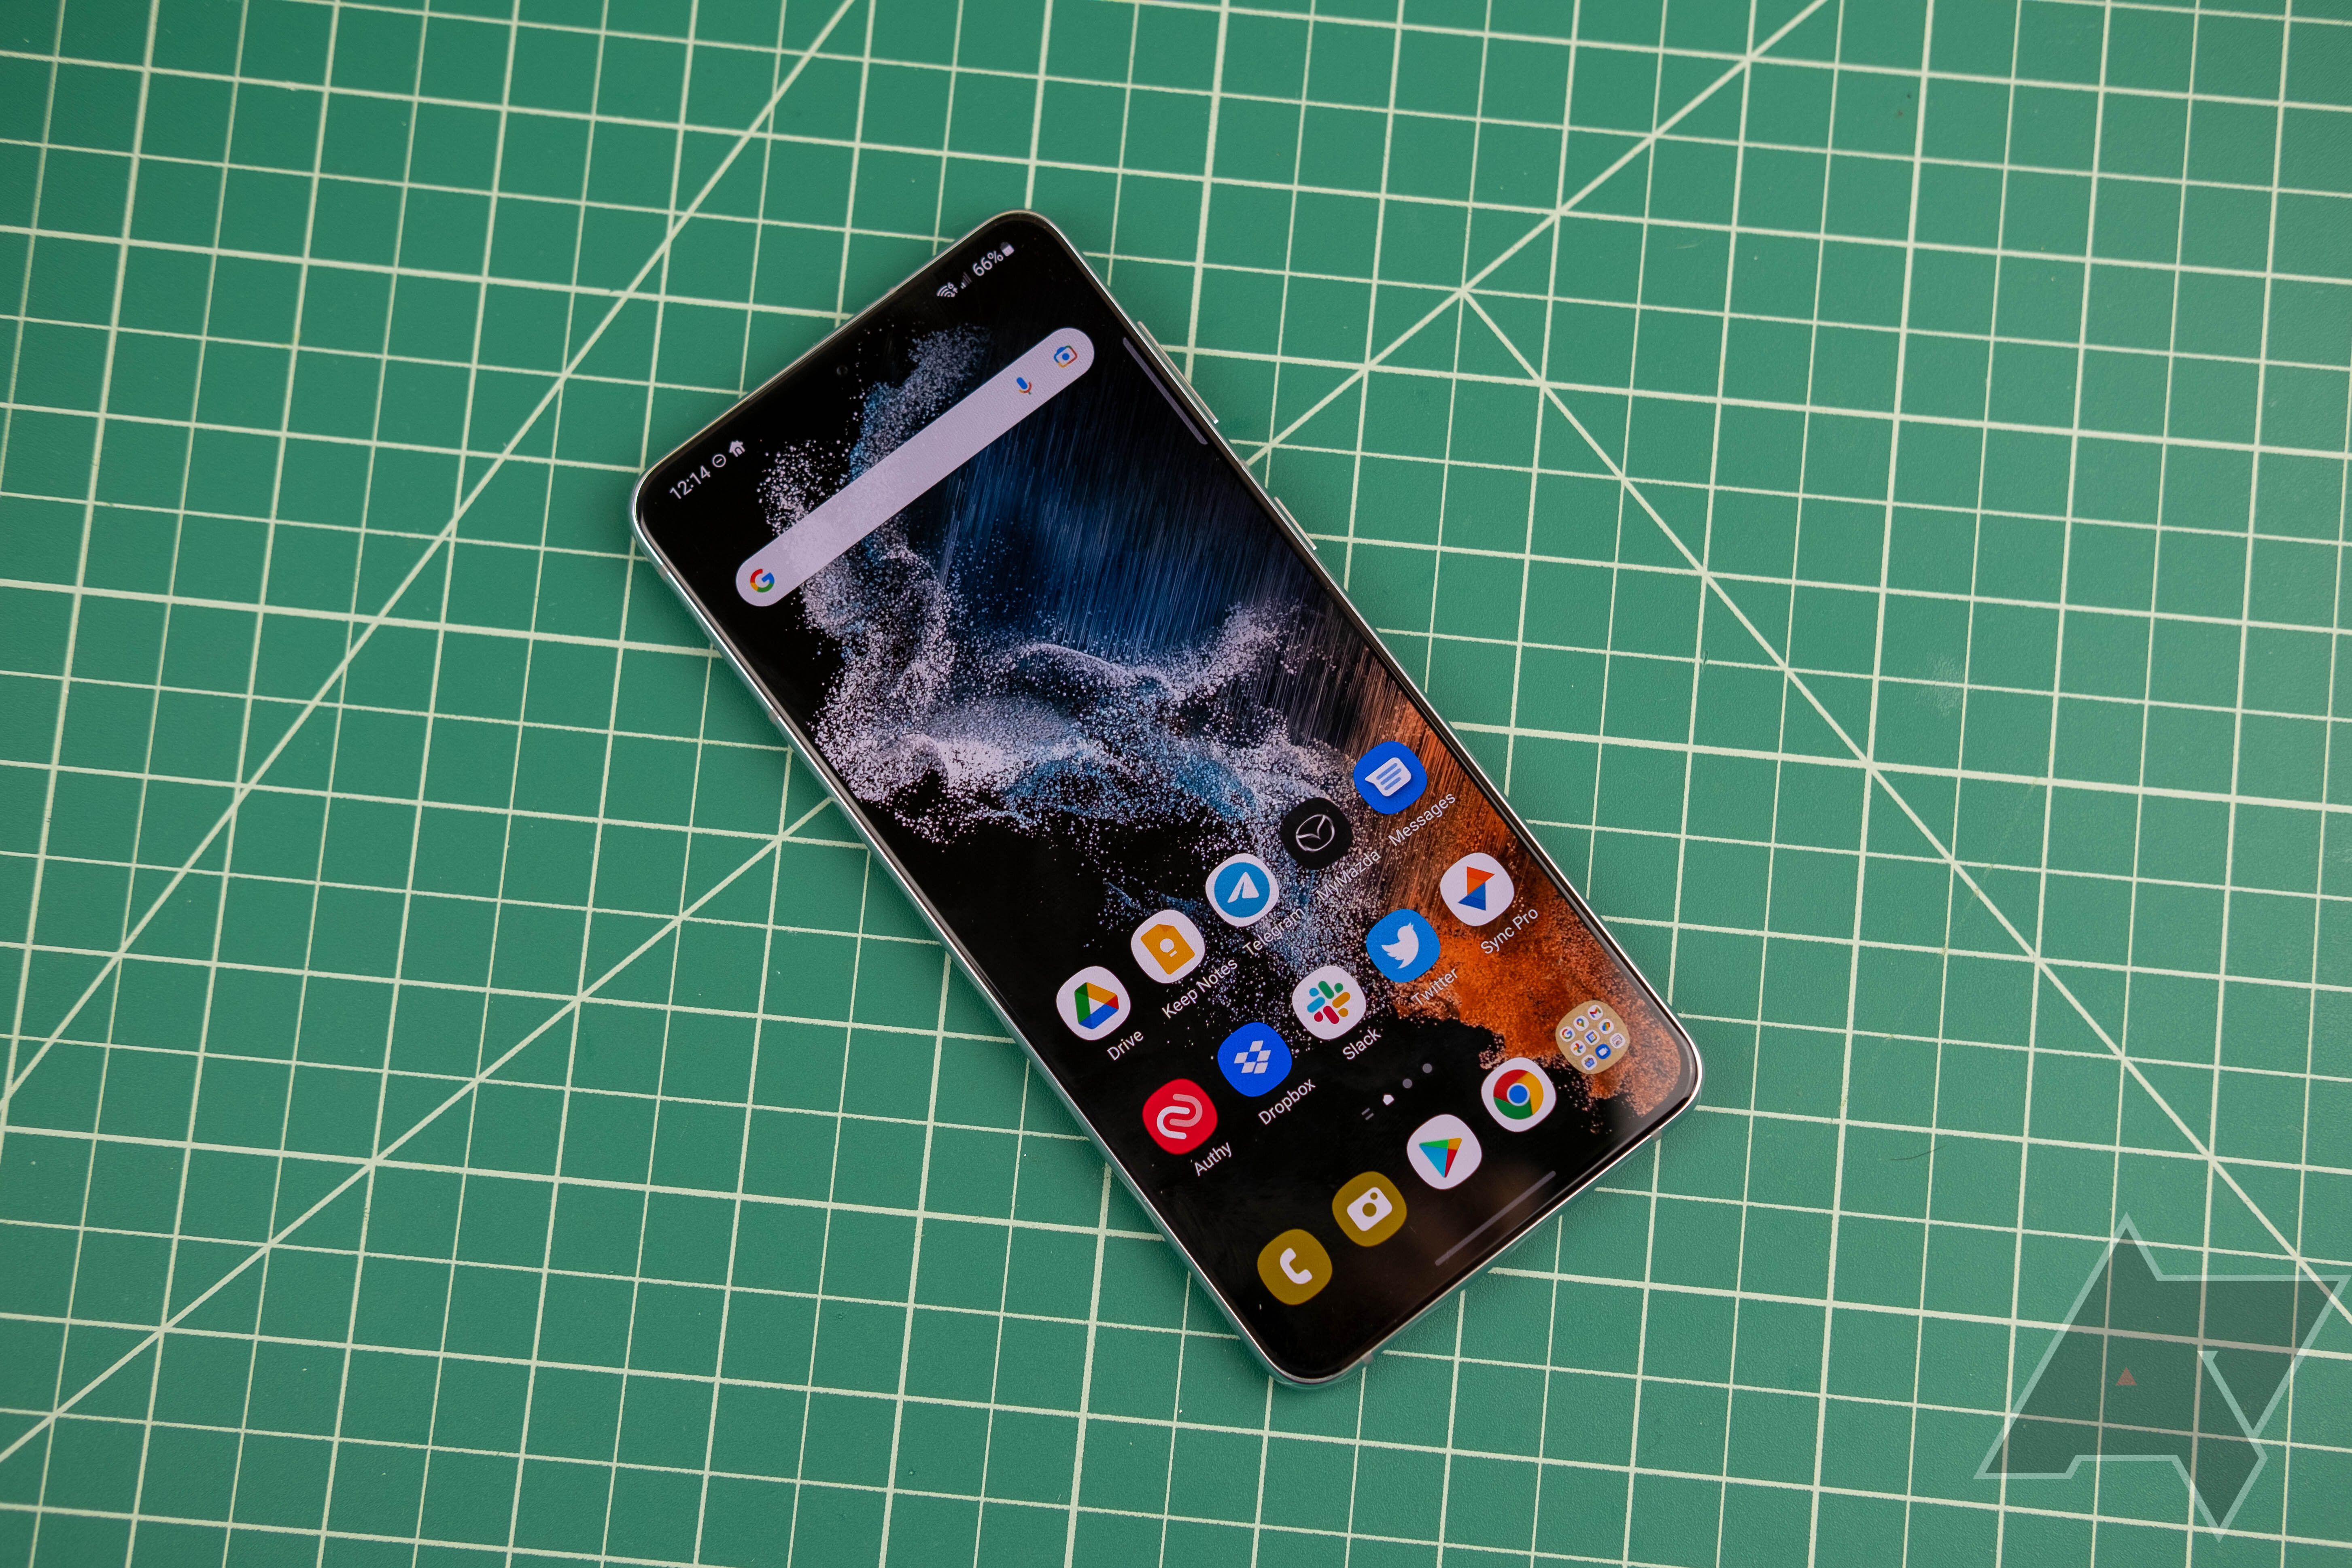 Samsung Galaxy S22 sắp ra mắt và bạn đang tìm kiếm những bức hình nền đẹp cho điện thoại của mình? Bạn đã đến đúng chỗ. Với độ phân giải chất lượng cao và những bức ảnh đẹp, tải hình nền Samsung Galaxy S22 ngay để làm cho màn hình của bạn trở nên sống động hơn.